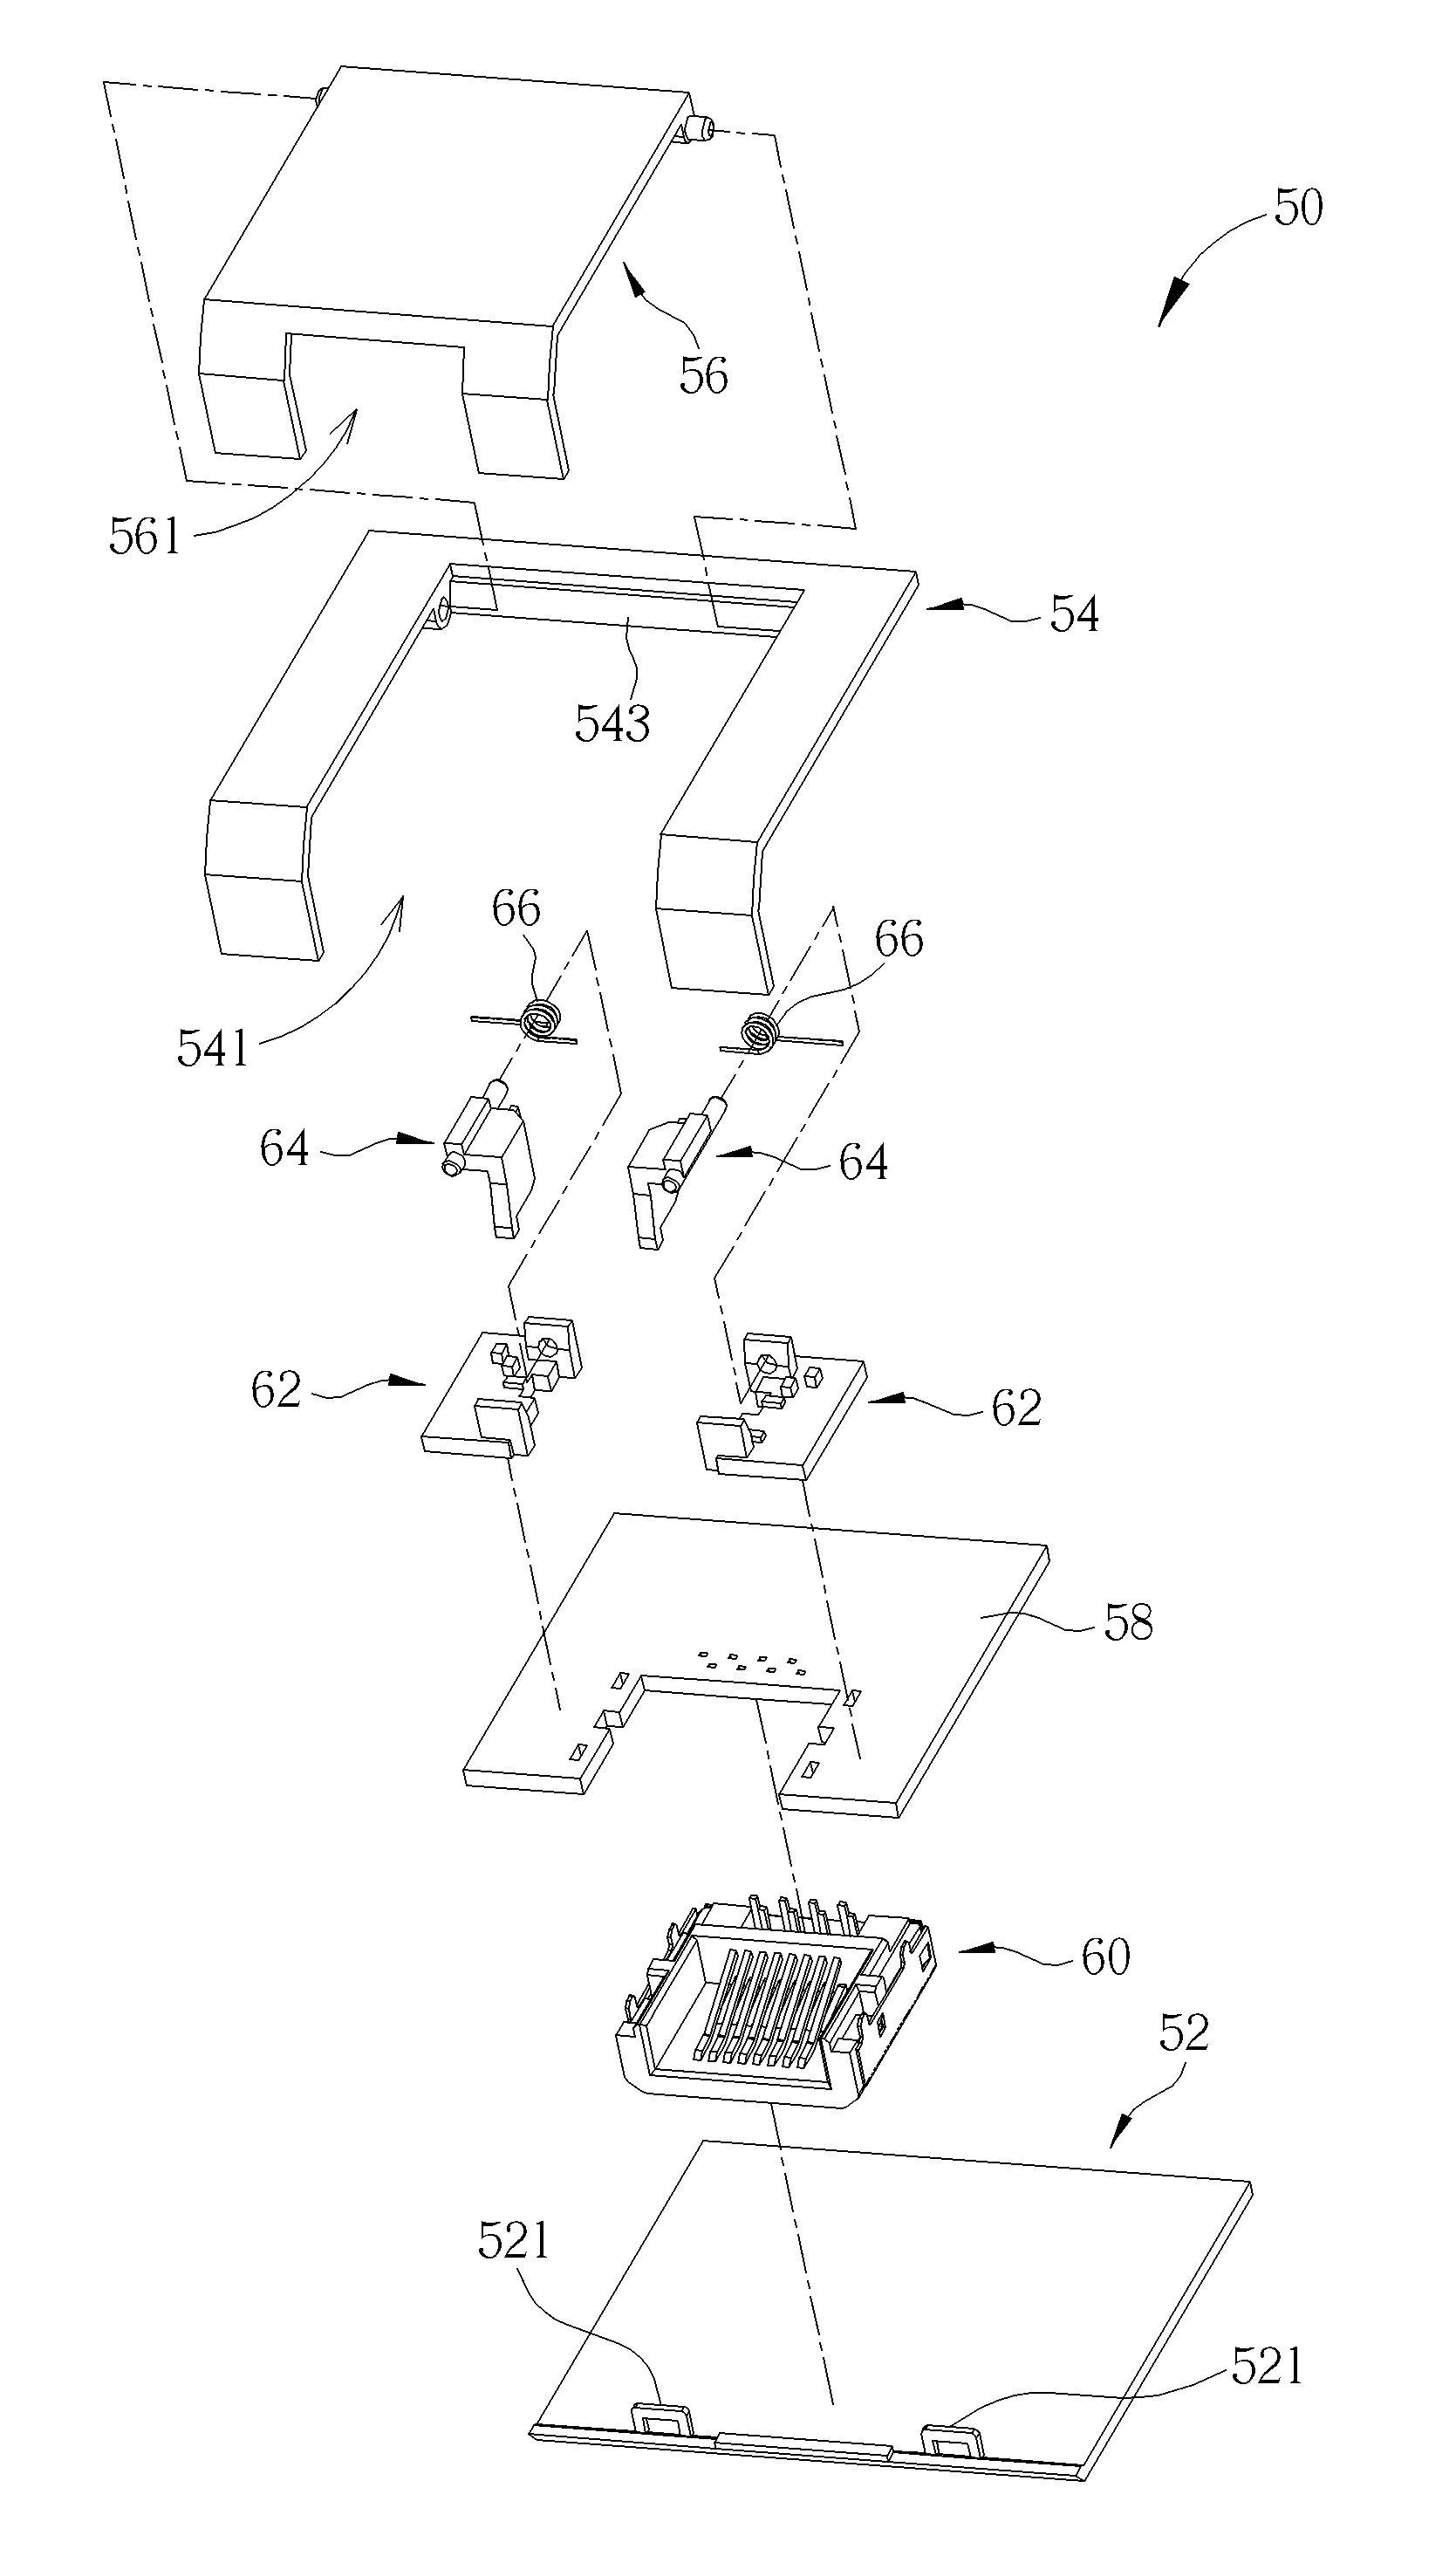 Connector mechanism